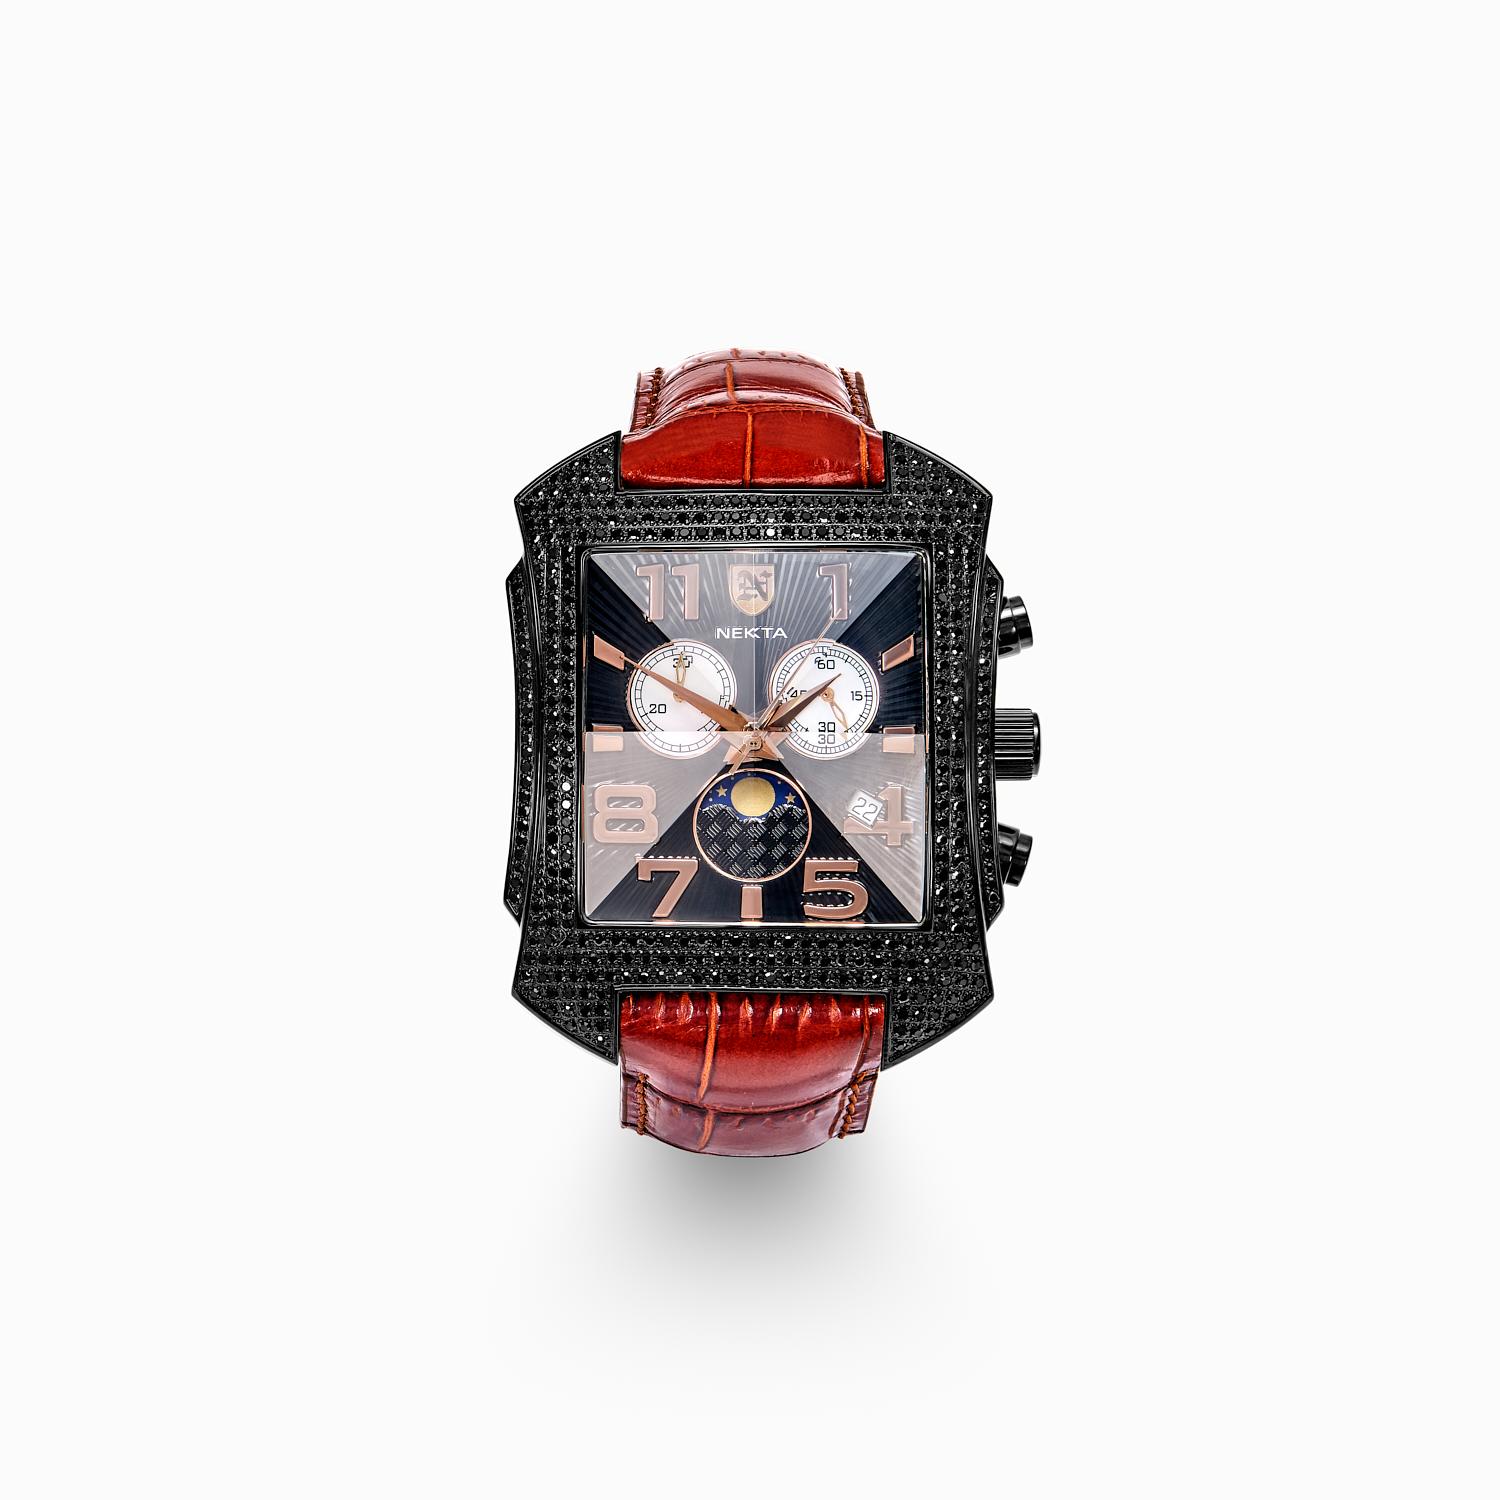 Voici la Nekta Watch : Édition limitée, un véritable chef-d'œuvre de design et d'ingénierie. Cette montre est une production limitée à 25 exemplaires seulement, chacun portant un numéro de série unique sur le fond du boîtier. La montre Nekta :